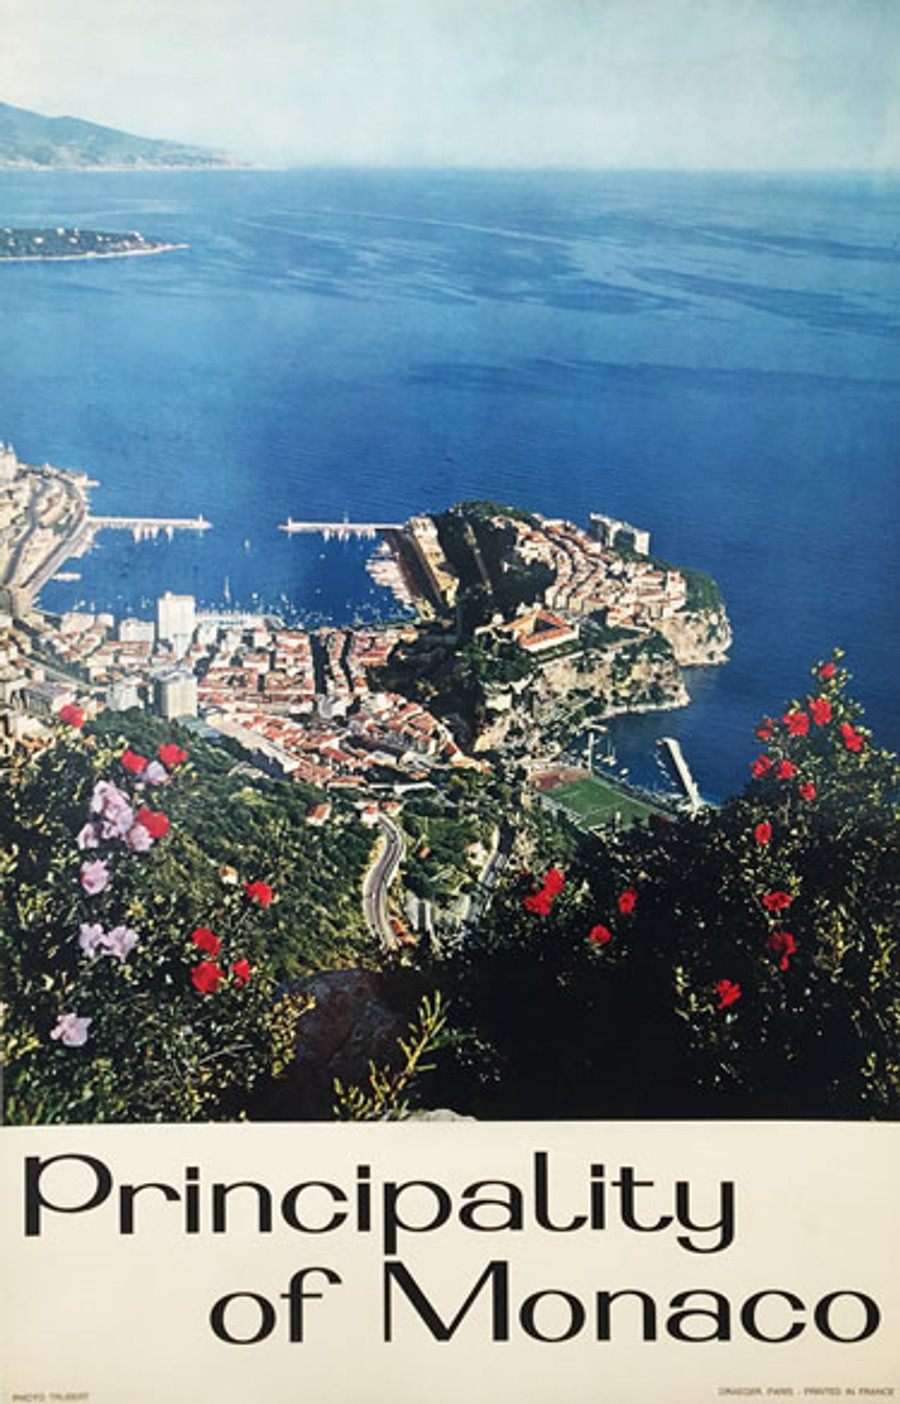 Principality of Monaco travel poster depicts Monaco, Corniche and ocean